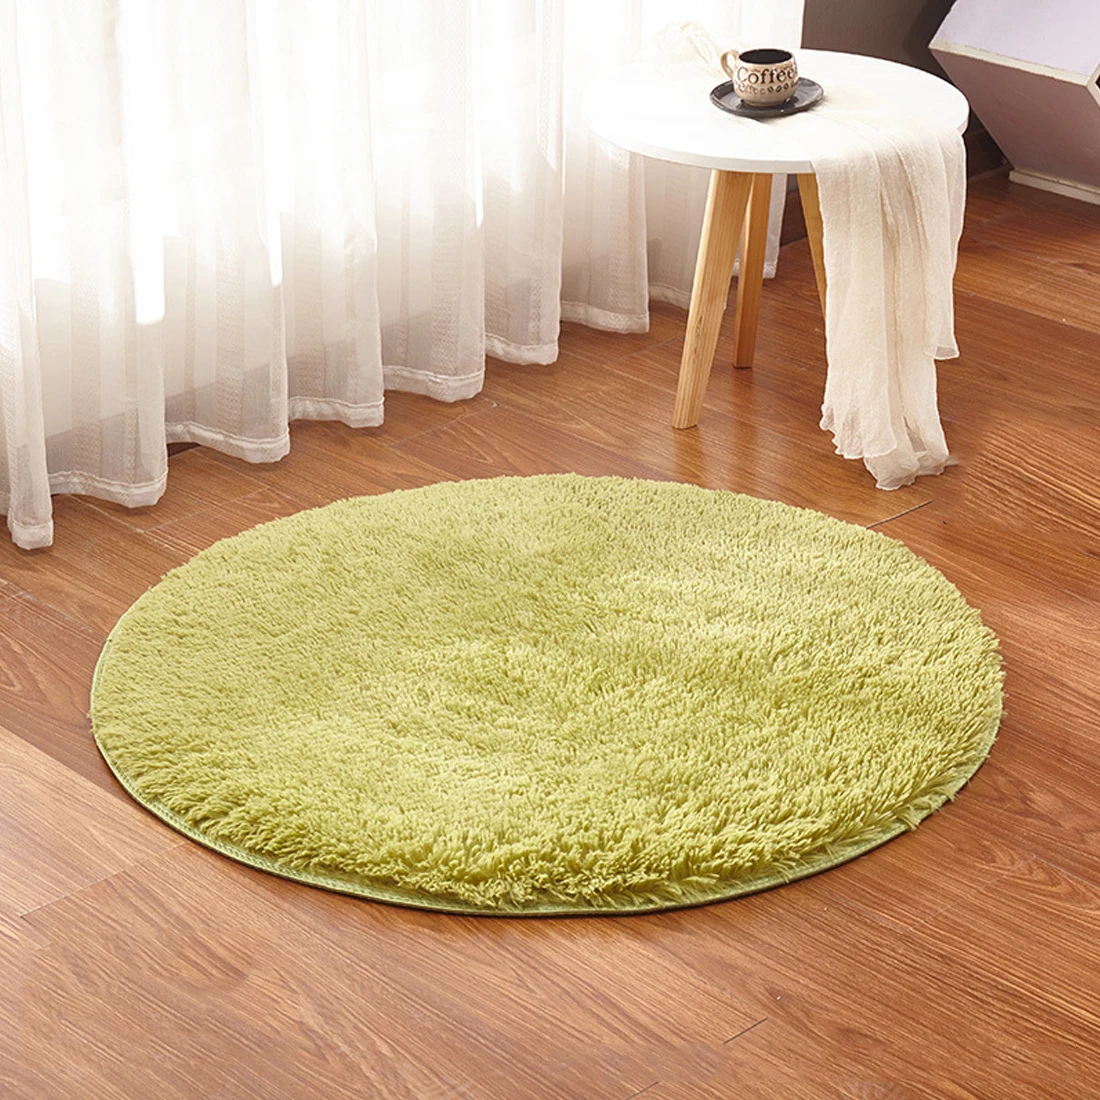 Диаметр 30 см-160 см, мягкий искусственный ковер, накидка на стул, коврик для спальни, искусственный теплый Пушистый Ковер, сиденье, текстиль, меховые коврики - Цвет: Grass Green